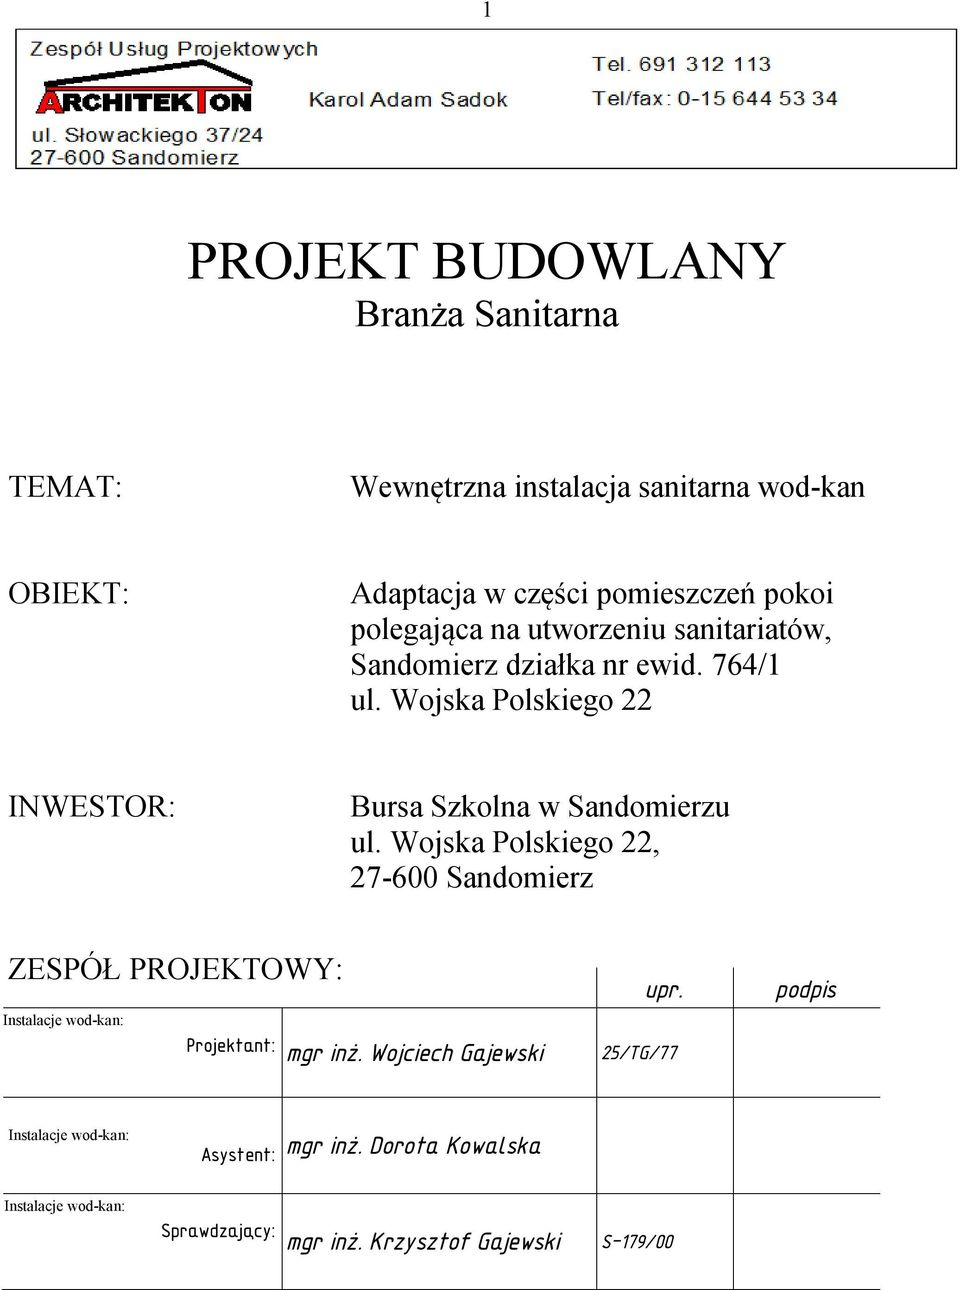 Wojska Polskiego 22, ZESPÓŁ PROJEKTOWY: Instalacje wod-kan: Projektant: mgr inż. Wojciech Gajewski upr.